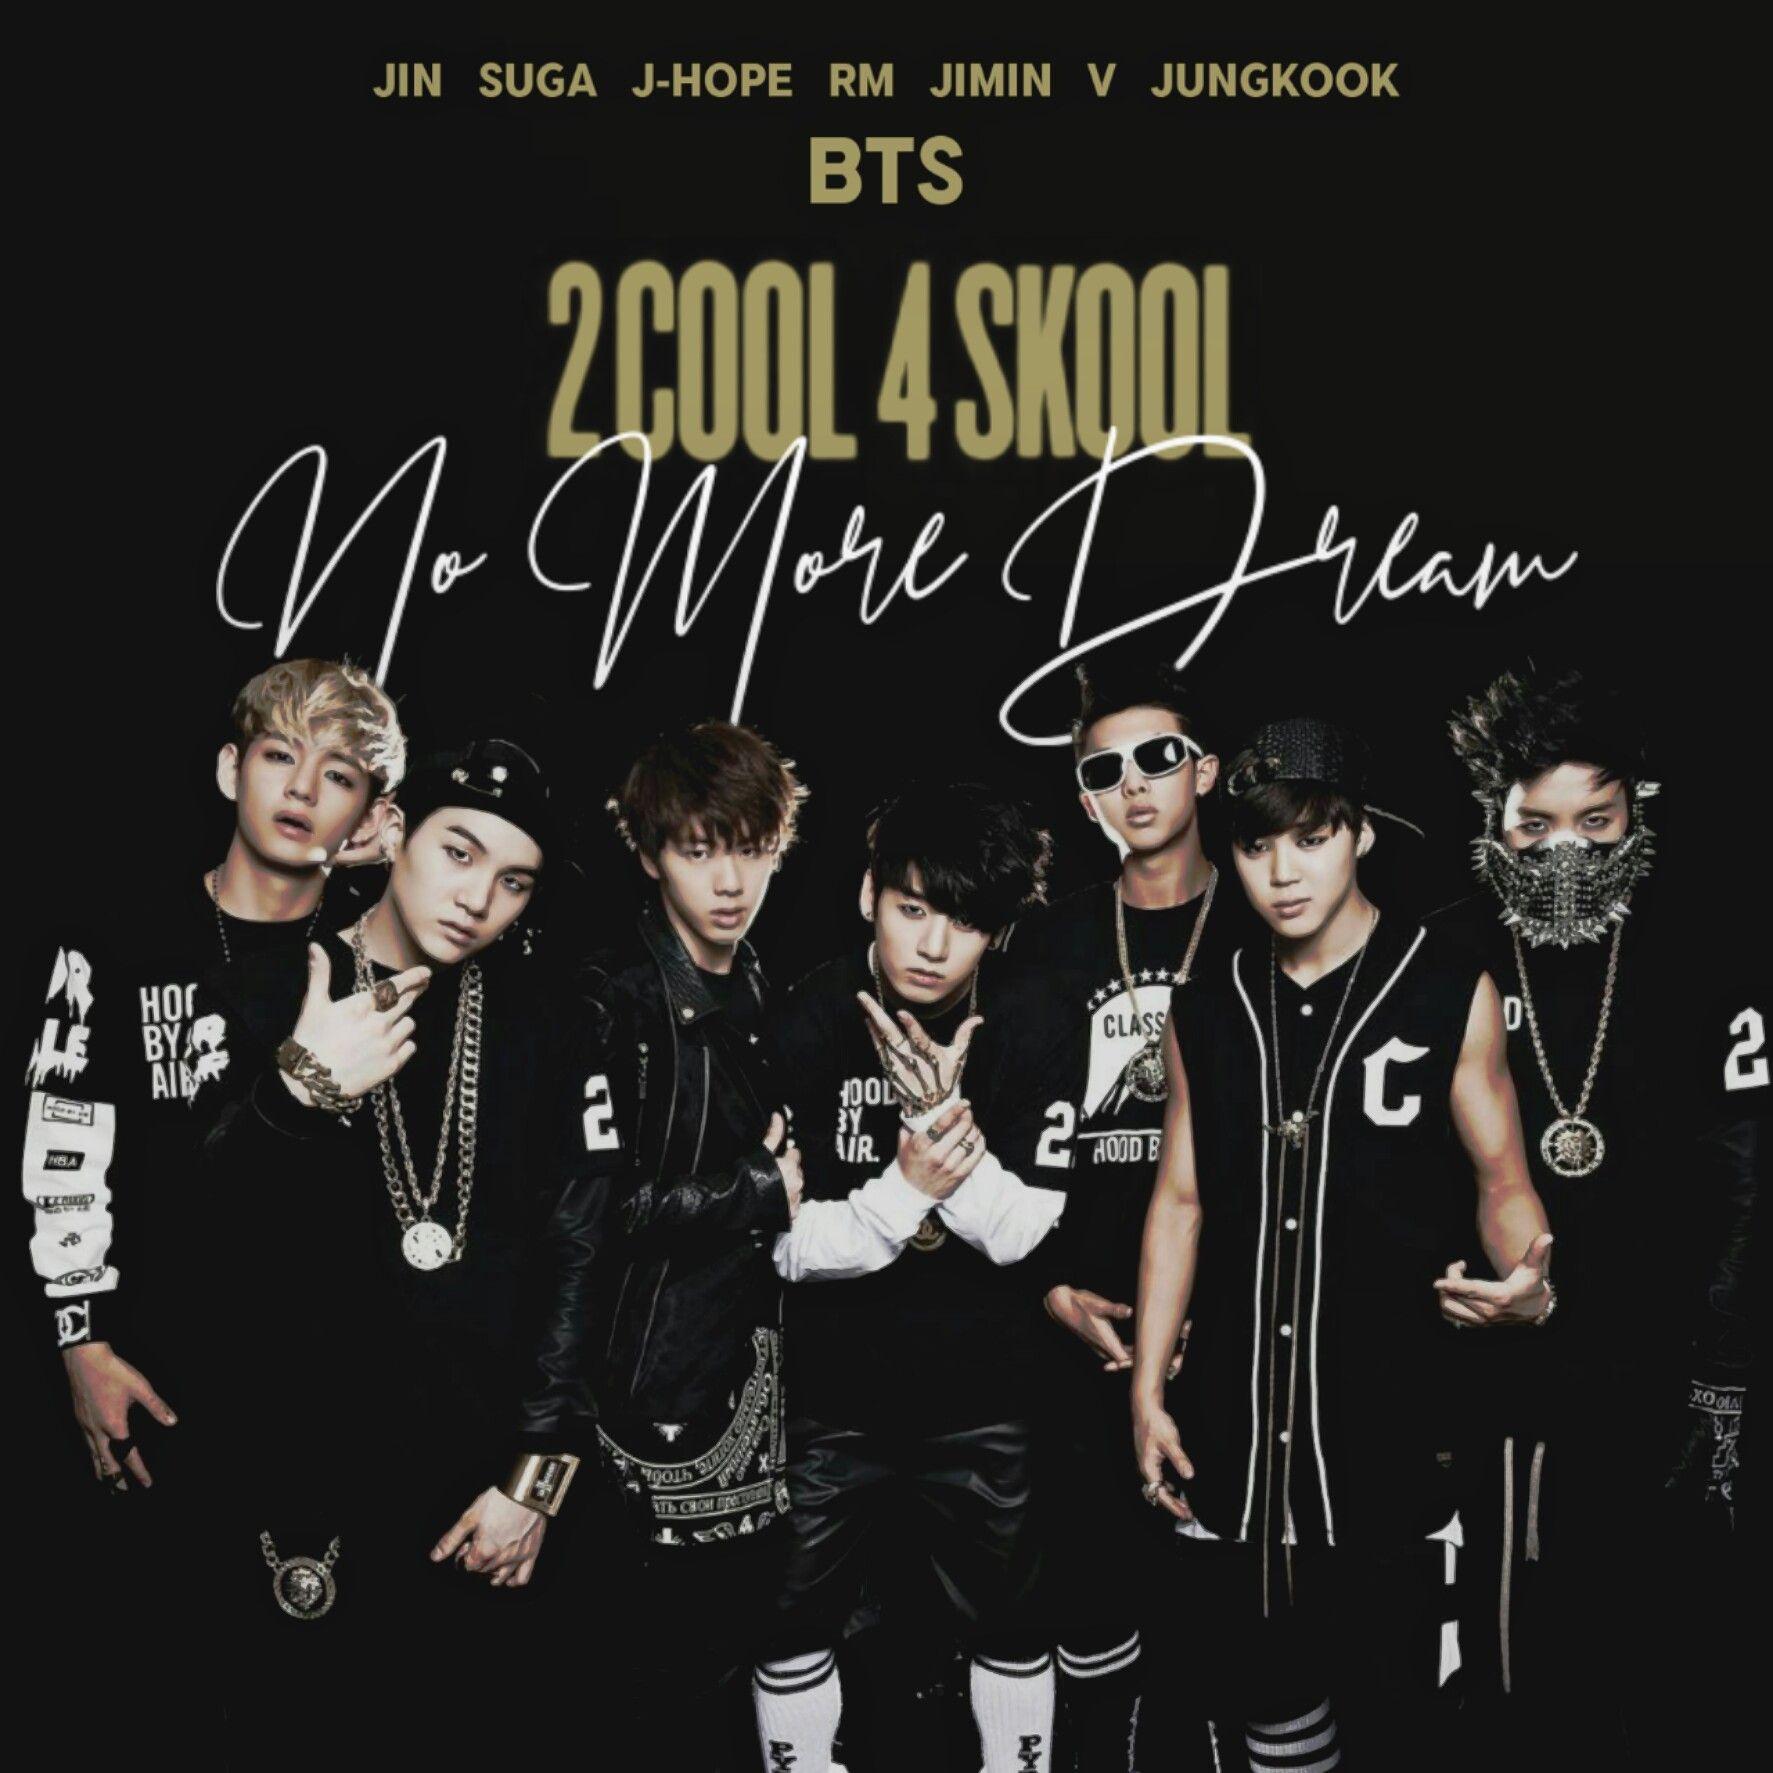 BTS NO MORE DREAM (2 COOL 4 SKOOL) album cover by LEAlbum. 방탄소녀